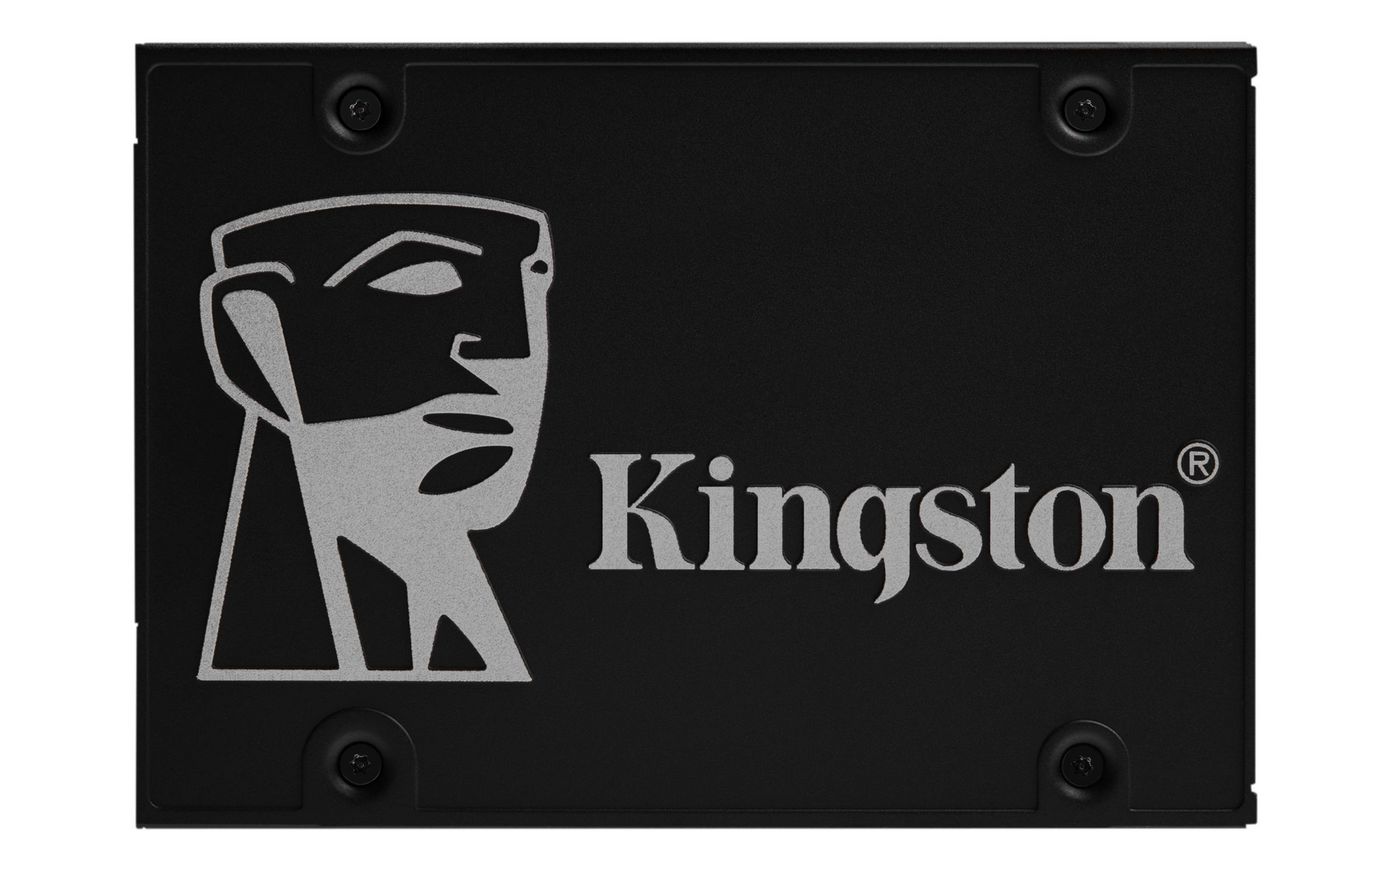 Kingston SKC600B2048G W128201067 2048G KC600 SATA3 2.5IN SSD 